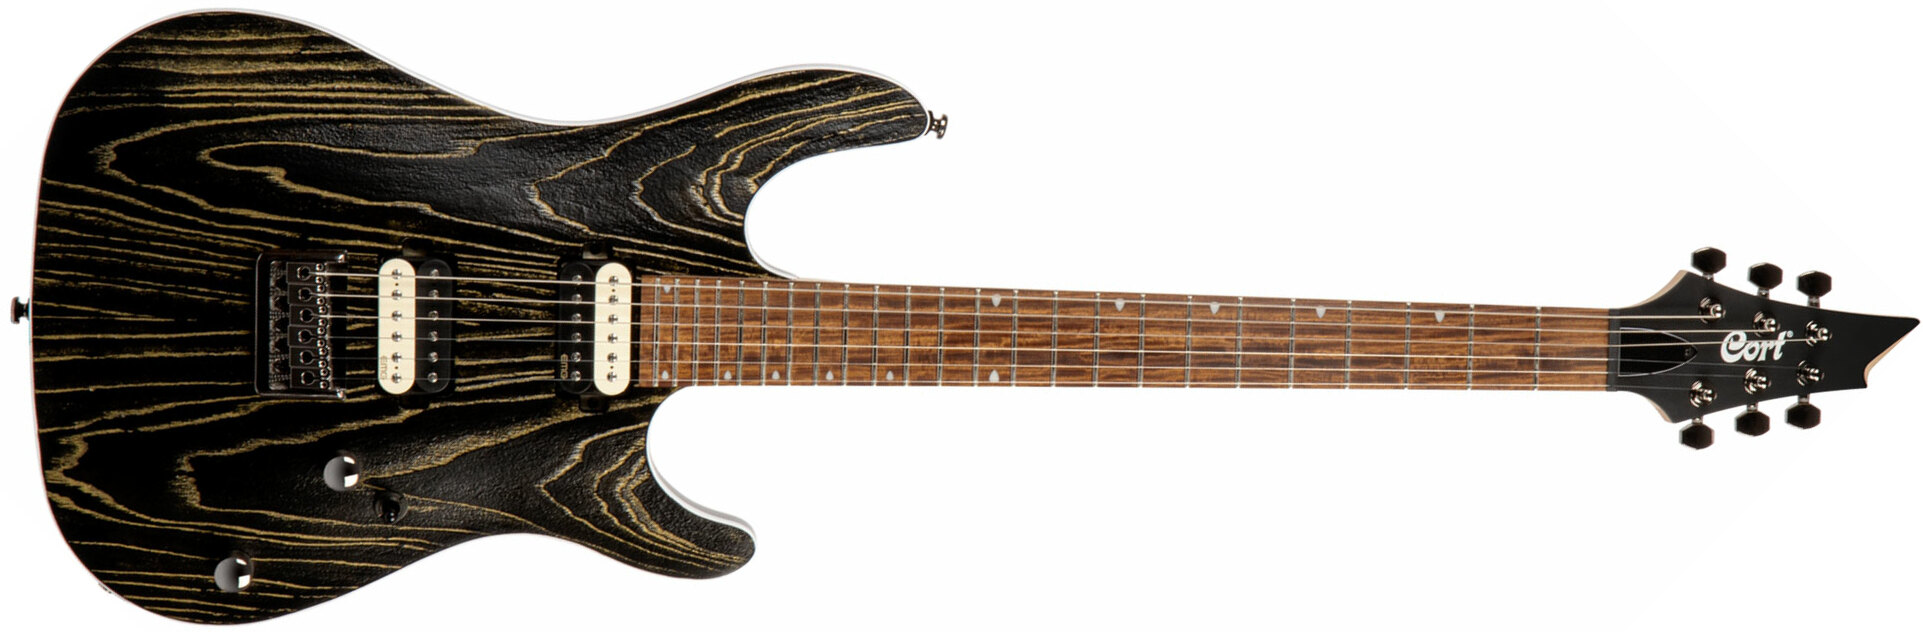 Cort Kx300 Ebr Hh Emg Ht Jat - Etched Black Gold - E-Gitarre in Str-Form - Main picture